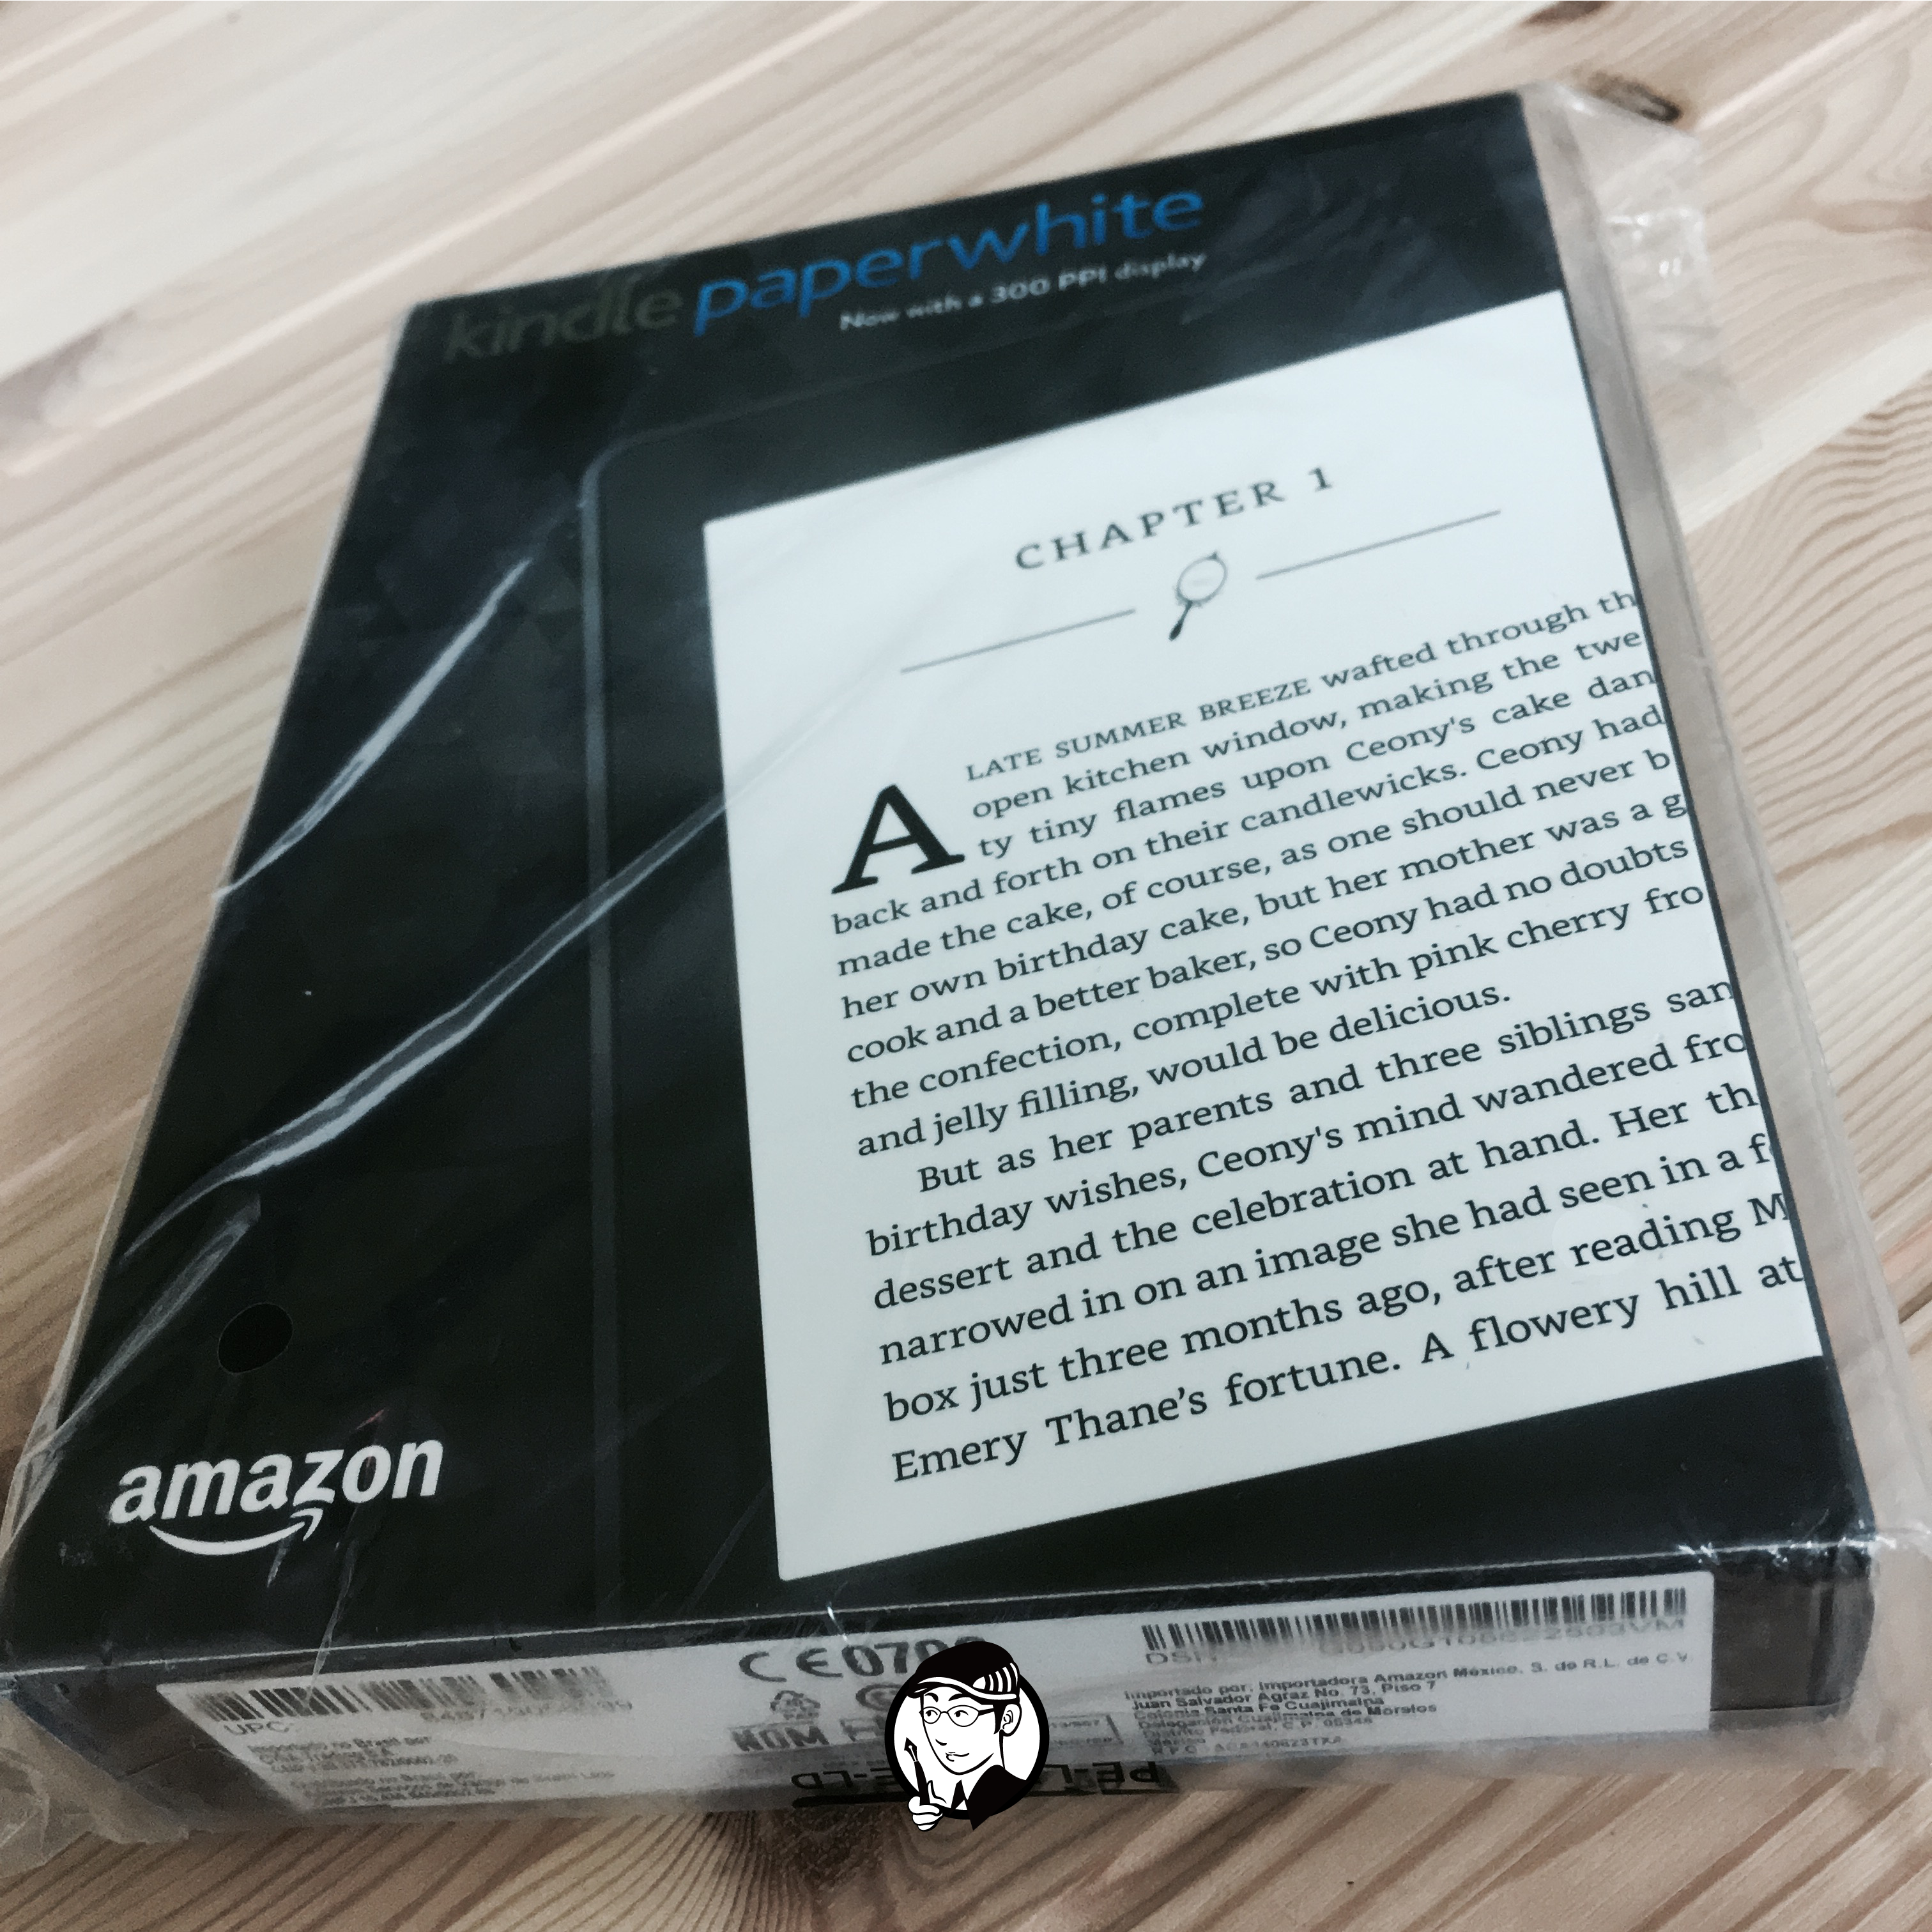 最近又買了一台美版的 Kindle PaperWhite ，順便分享一下自己一年多來的使用心得。